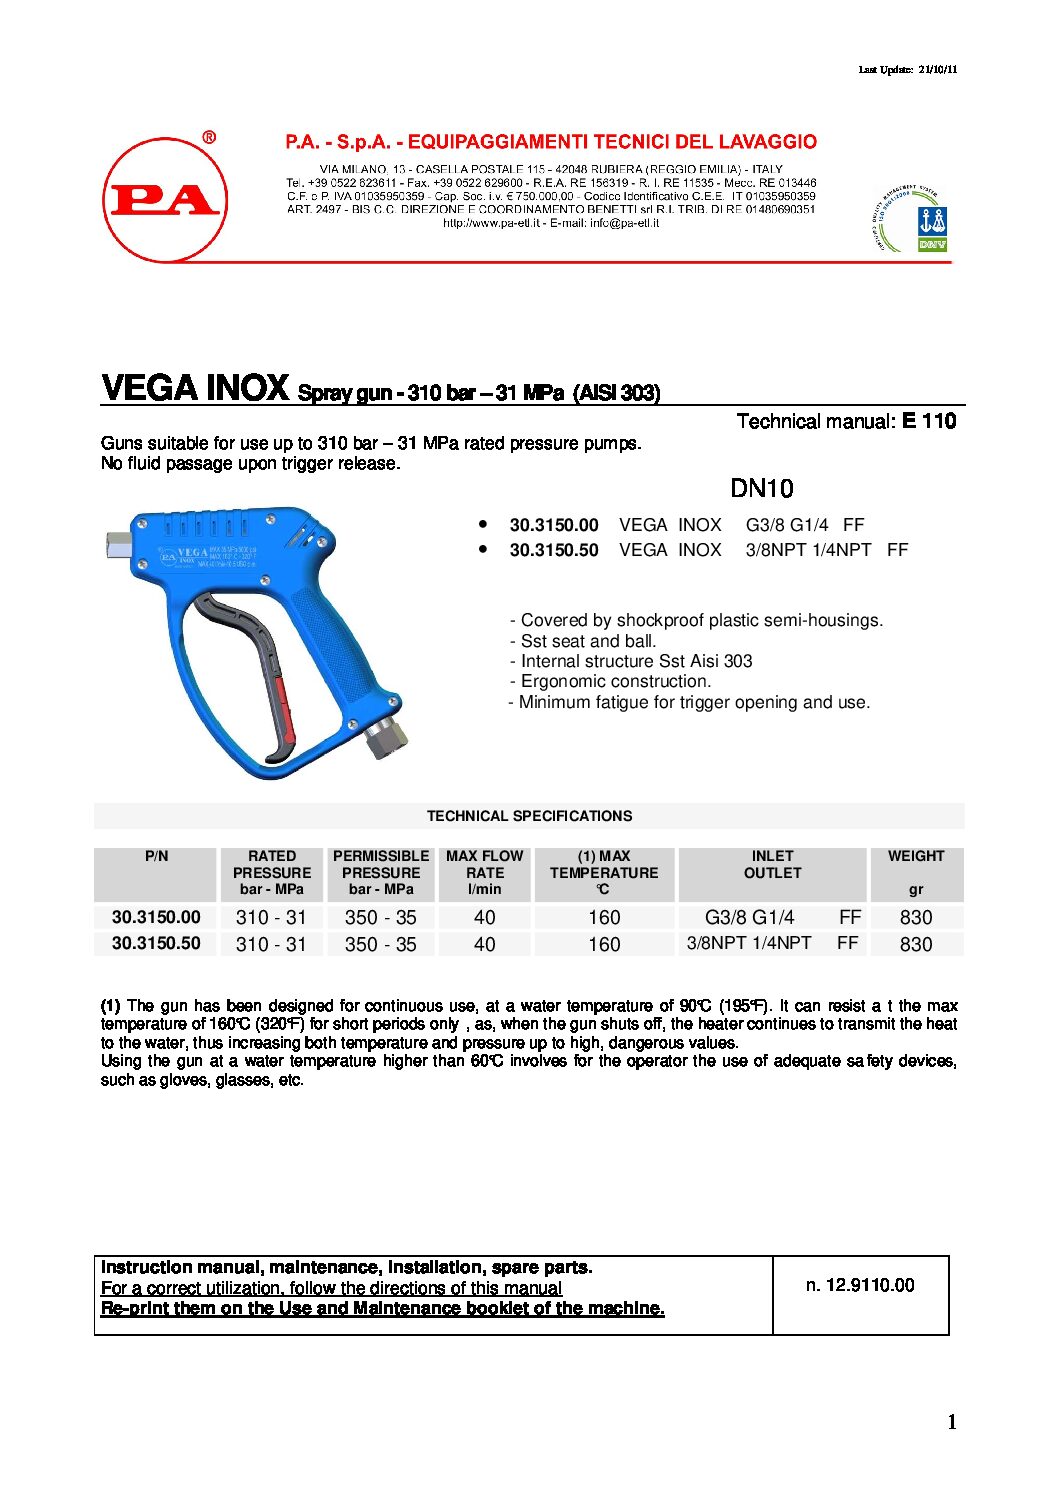 PA G250VS Stainless Steel Vega Spray Gun technical information